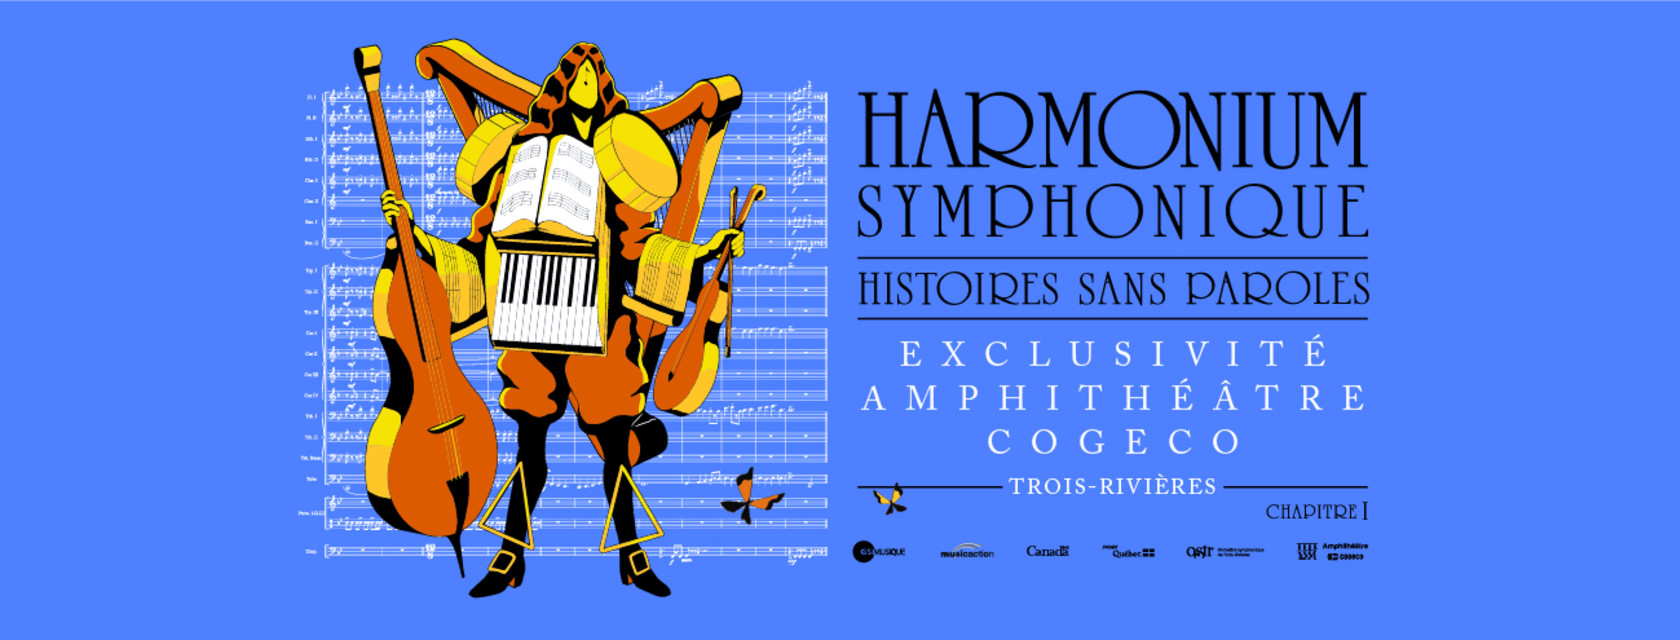  Harmonium symphonique - Histoires sans paroles: La frénésie du spectacle se fait sentir à Trois-Rivières